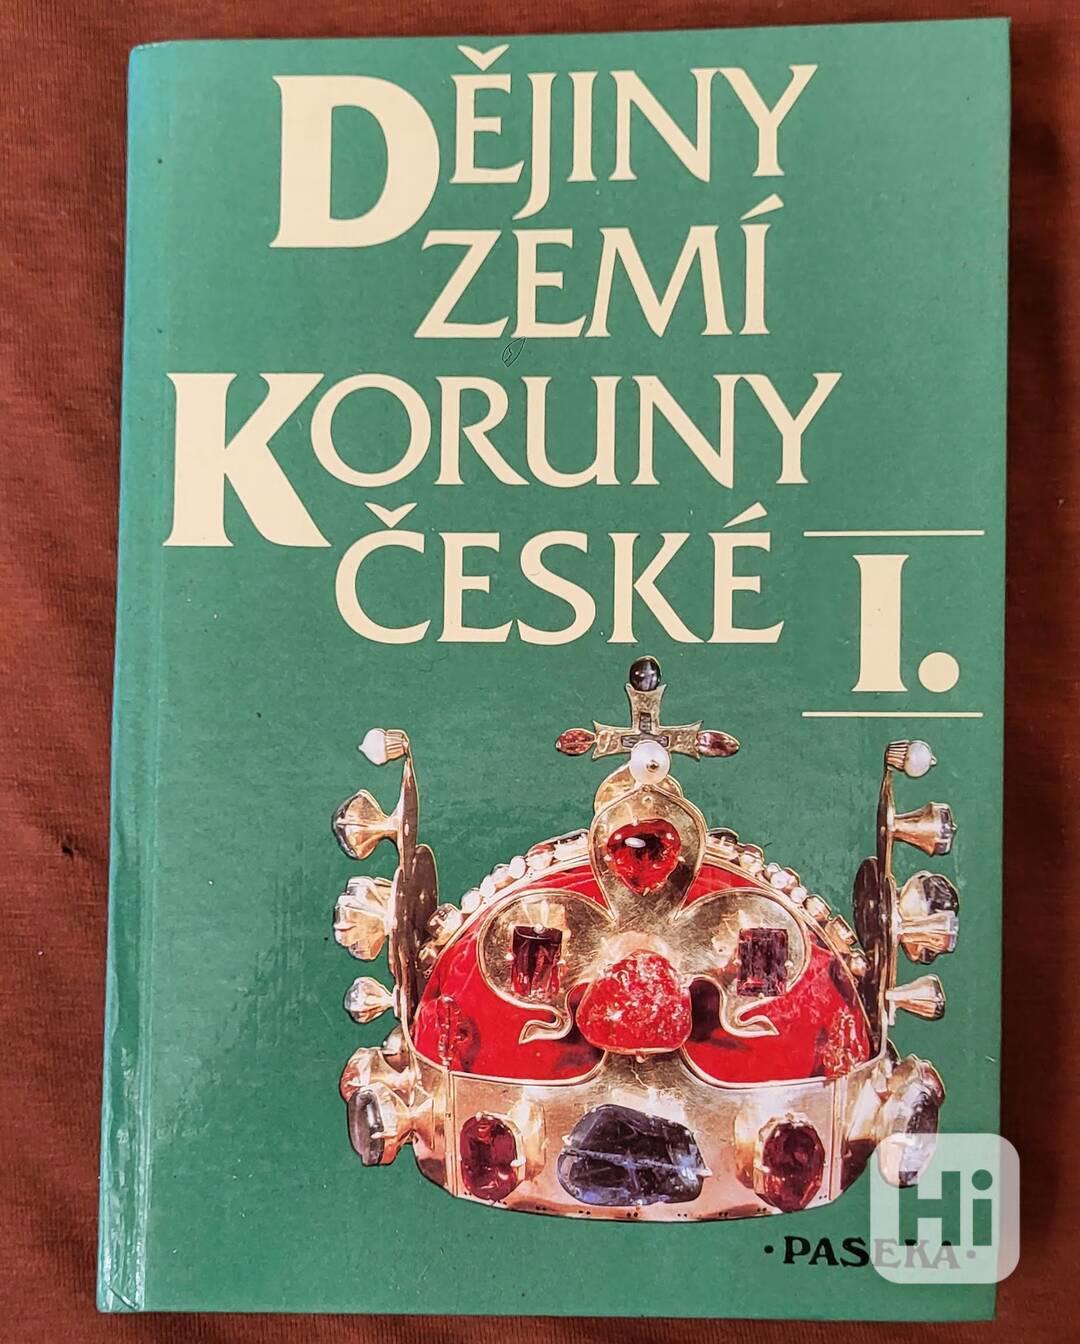 Dějiny zemí Koruny české. I., - Od příchodu Slovanů do 1740 - foto 1